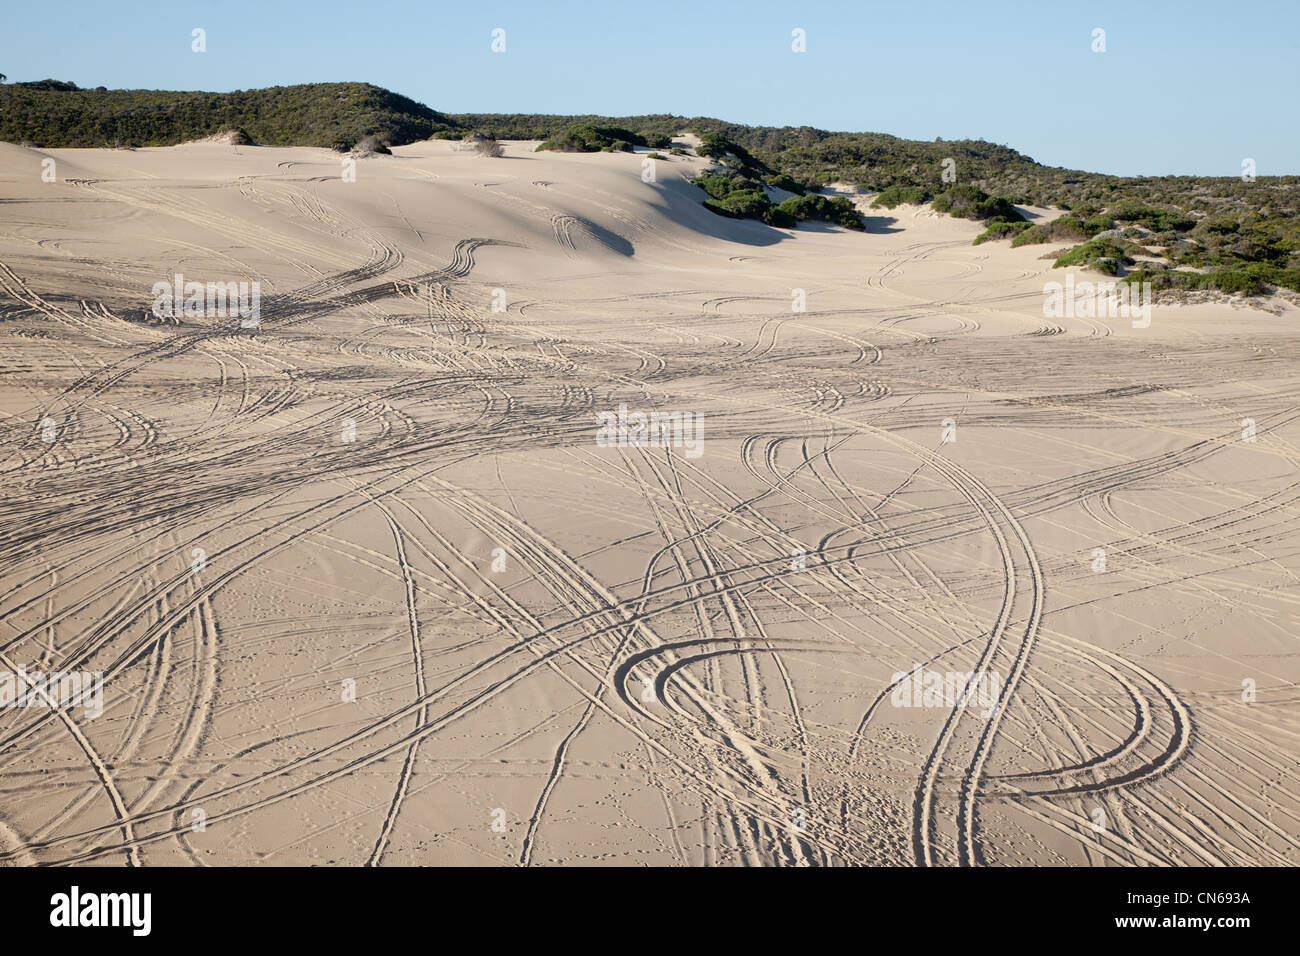 Marcas de neumáticos a lo largo de la arena de la península Eyre, Australia del Sur Foto de stock